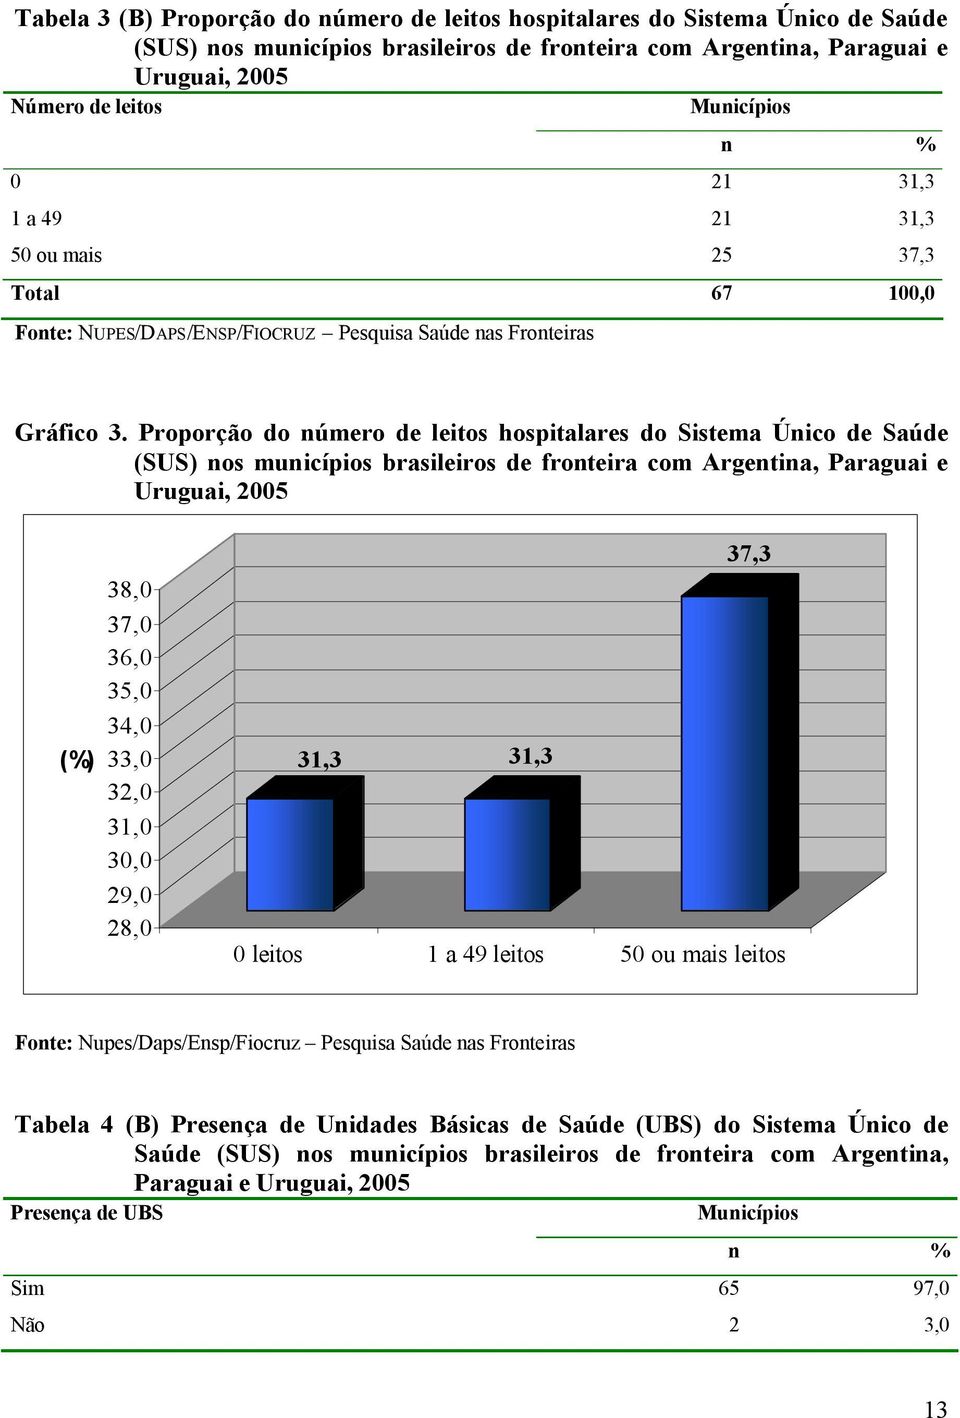 Proporção do número de leitos hospitalares do Sistema Único de Saúde (SUS) nos municípios brasileiros de fronteira com Argentina, Paraguai e Uruguai, 2005 (%) 38,0 37,0 36,0 35,0 34,0 33,0 32,0 31,0